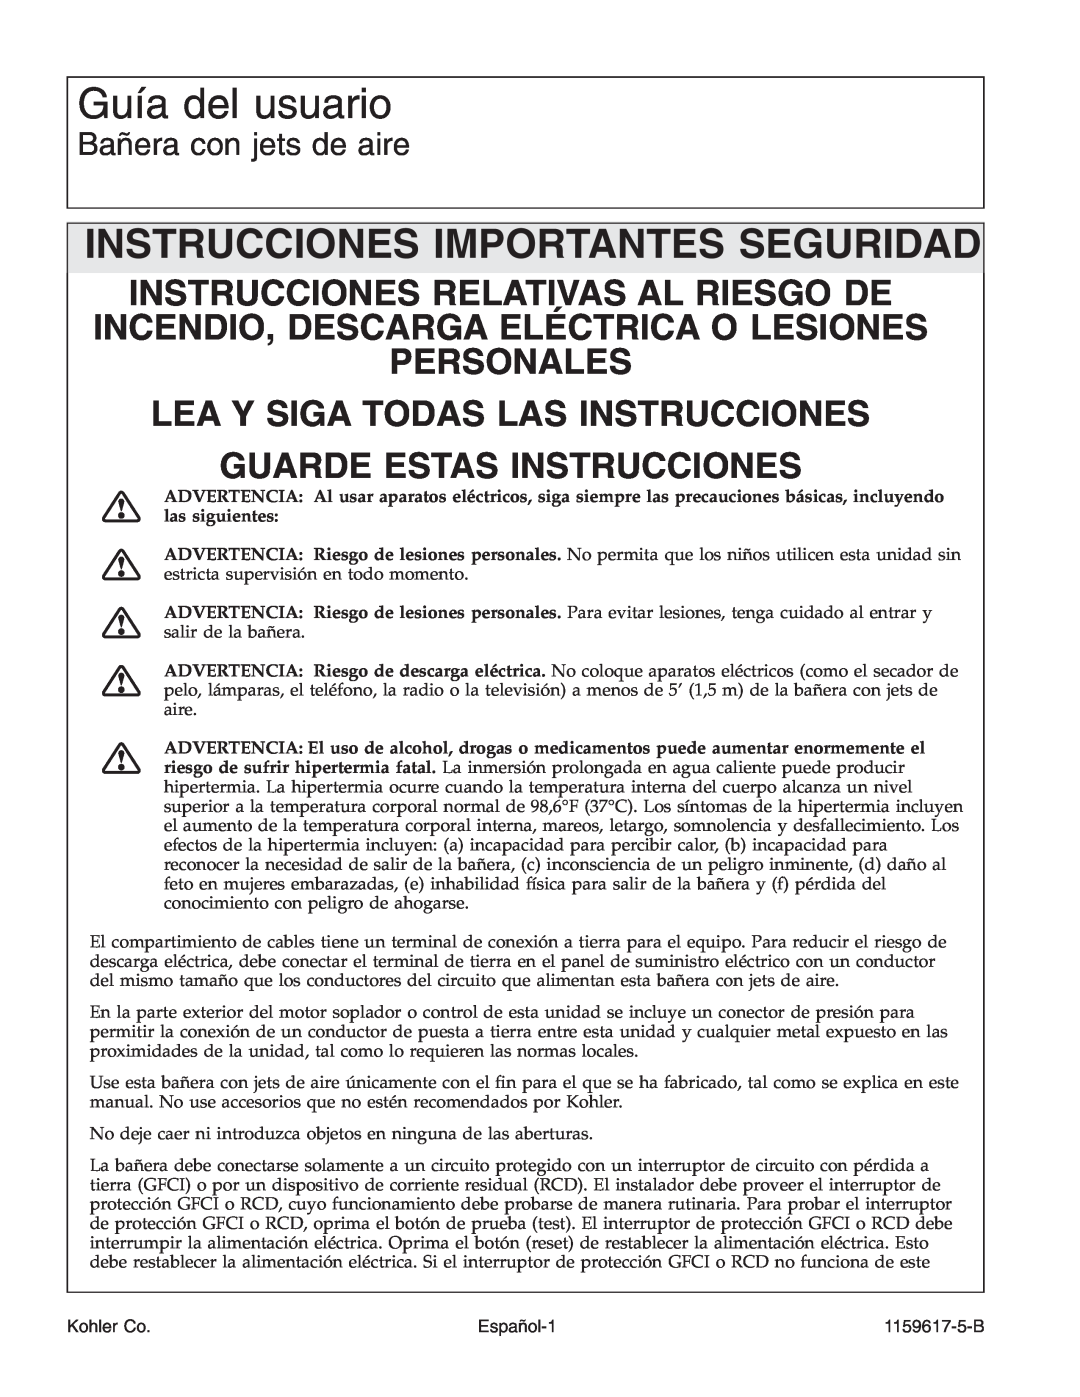 Kohler K-1969 manual Guía del usuario, Instrucciones Importantes Seguridad, Bañera con jets de aire, Español-1, Kohler Co 